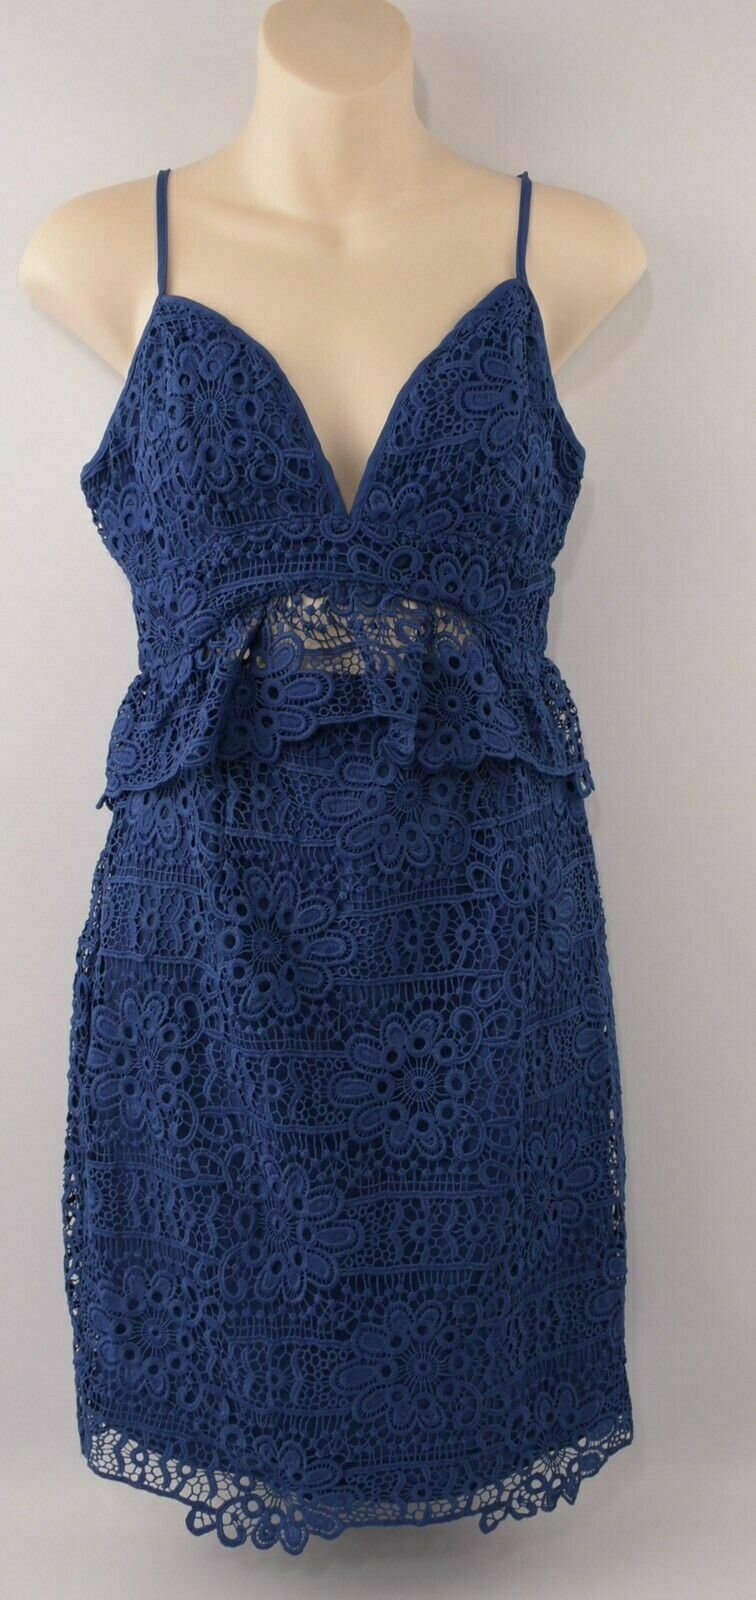 GUESS Women's Crochet Spaghetti Straps Dress, Blue, size UK 4 UK 6